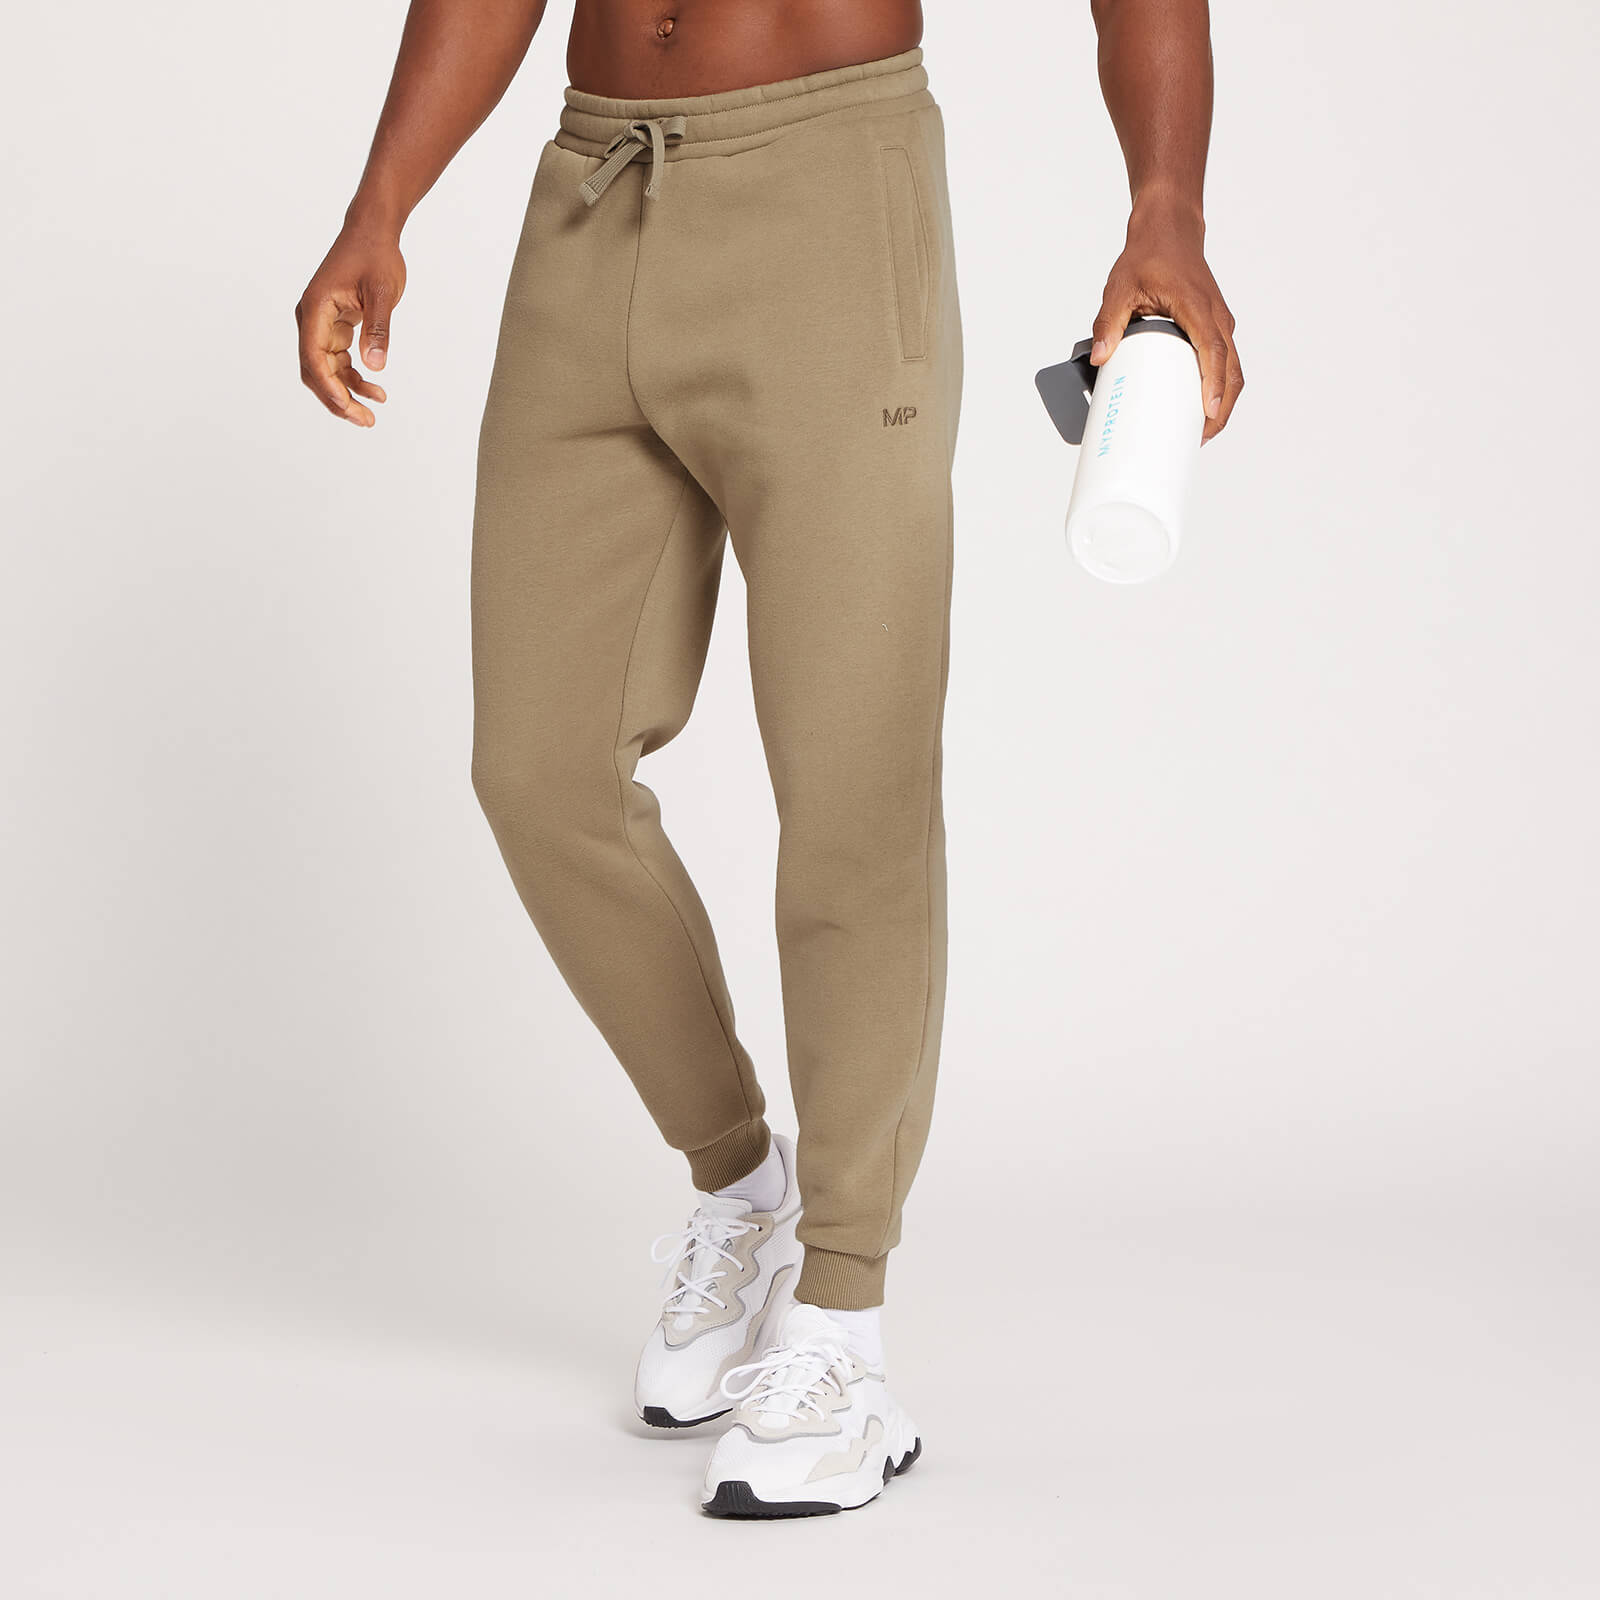 Pantalón deportivo con detalle gráfico de MP repetido para hombre de MP - Marrón grisáceo - XS